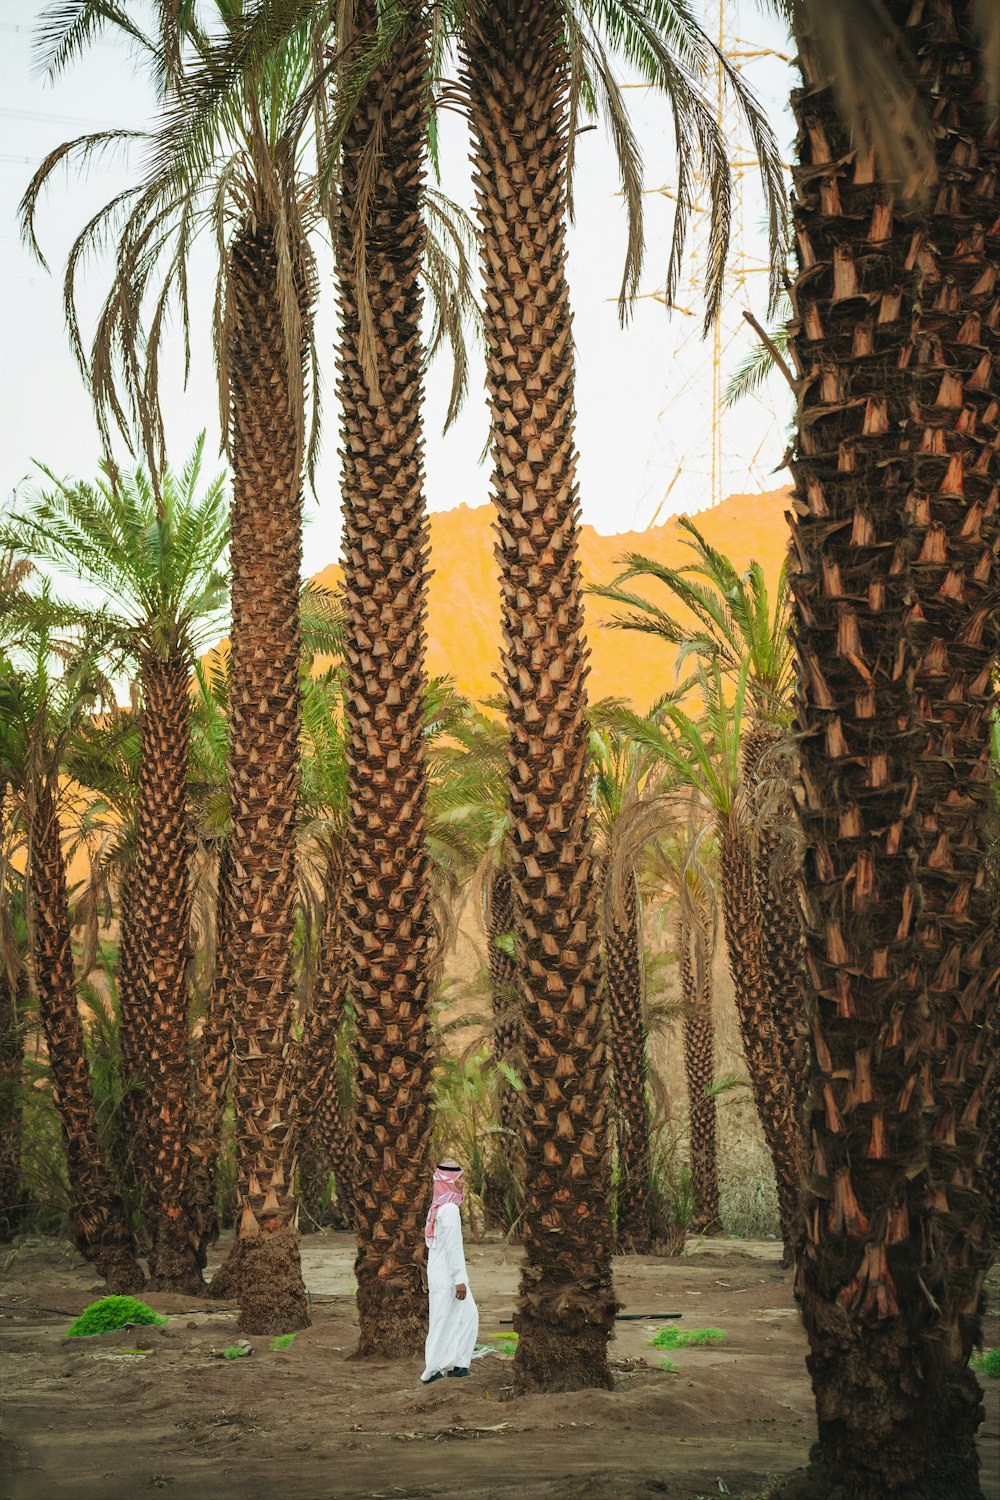 Un uomo in piedi tra le palme in un deserto